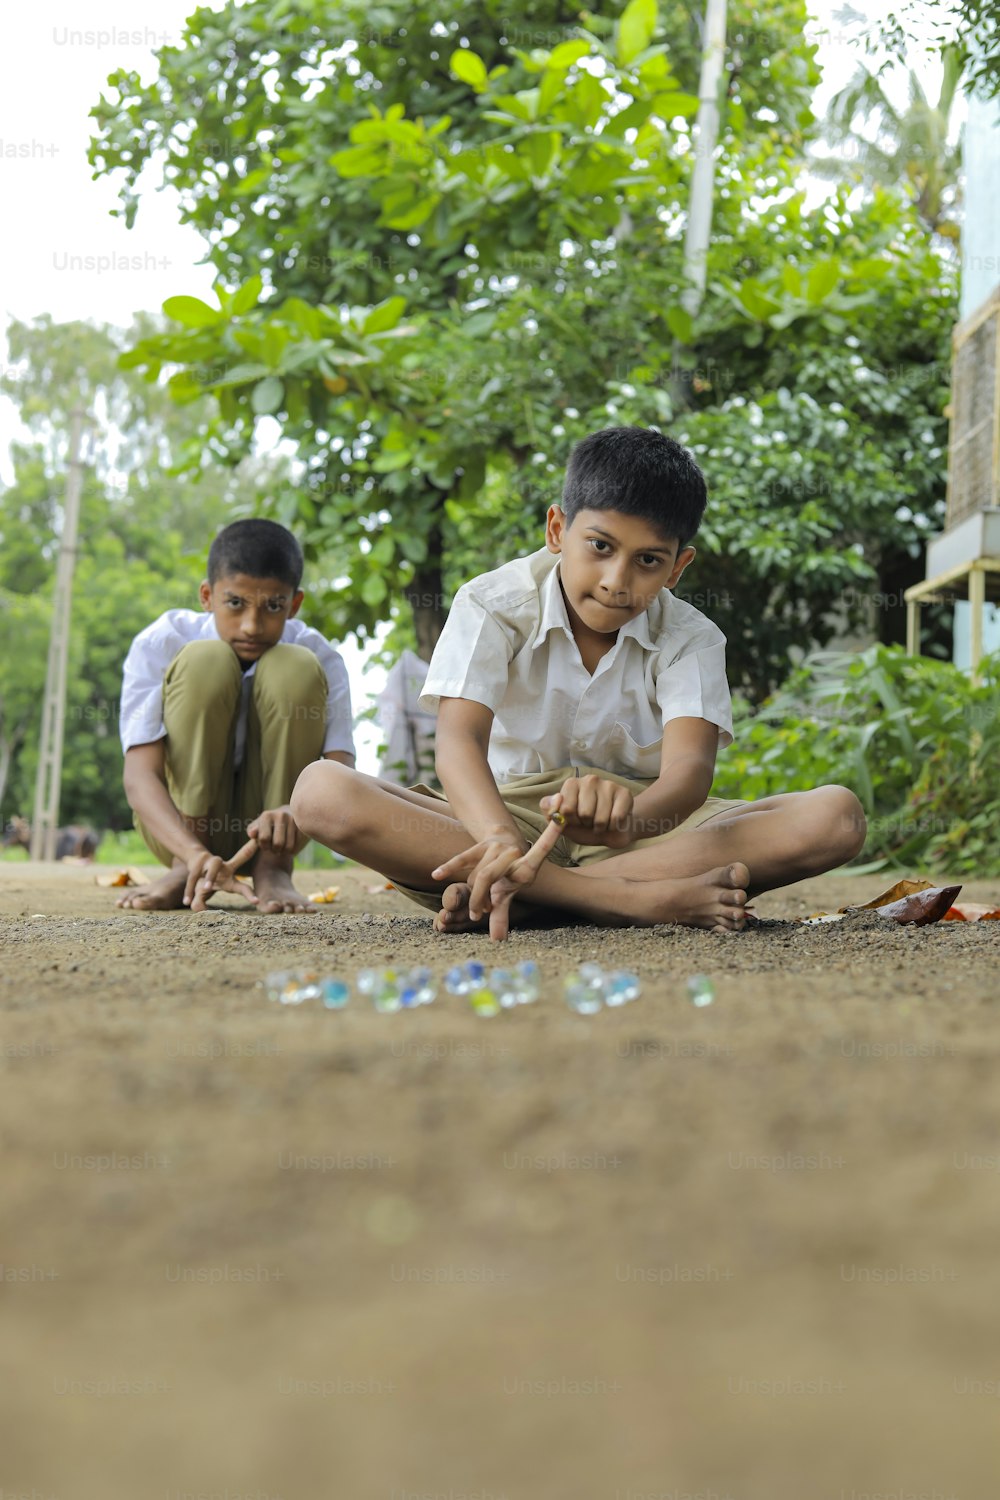 Bambino indiano che gioca con biglie di vetro che è un vecchio gioco del villaggio indiano. I marmi di vetro sono anche chiamati Kancha in lingua hindi.